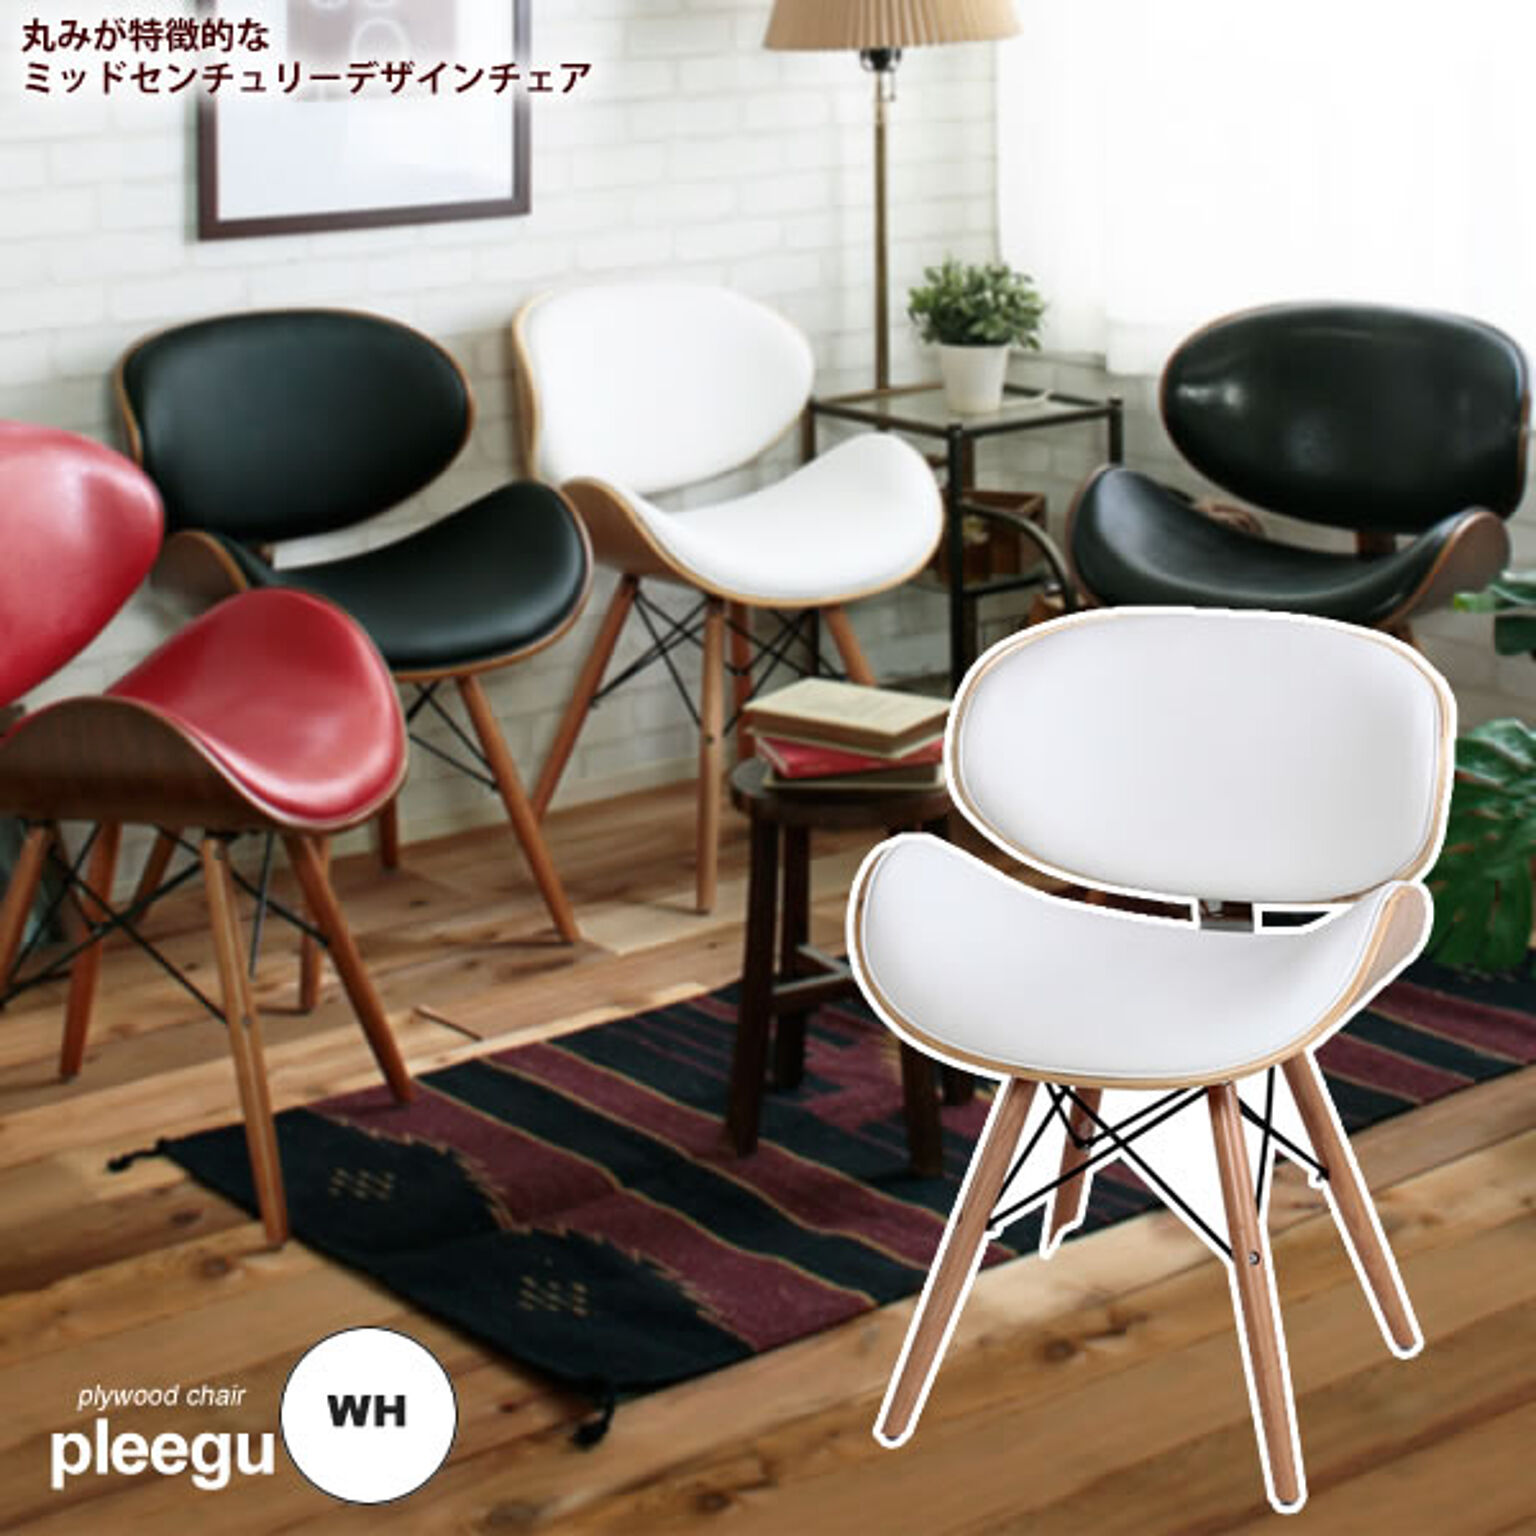 ダイニングチェア 椅子 イス いす ワークチェア デスクチェアー ： ホワイト【pleegu】 ホワイト(white) (ナチュラル) ミッドセンチュリー プライウッド 